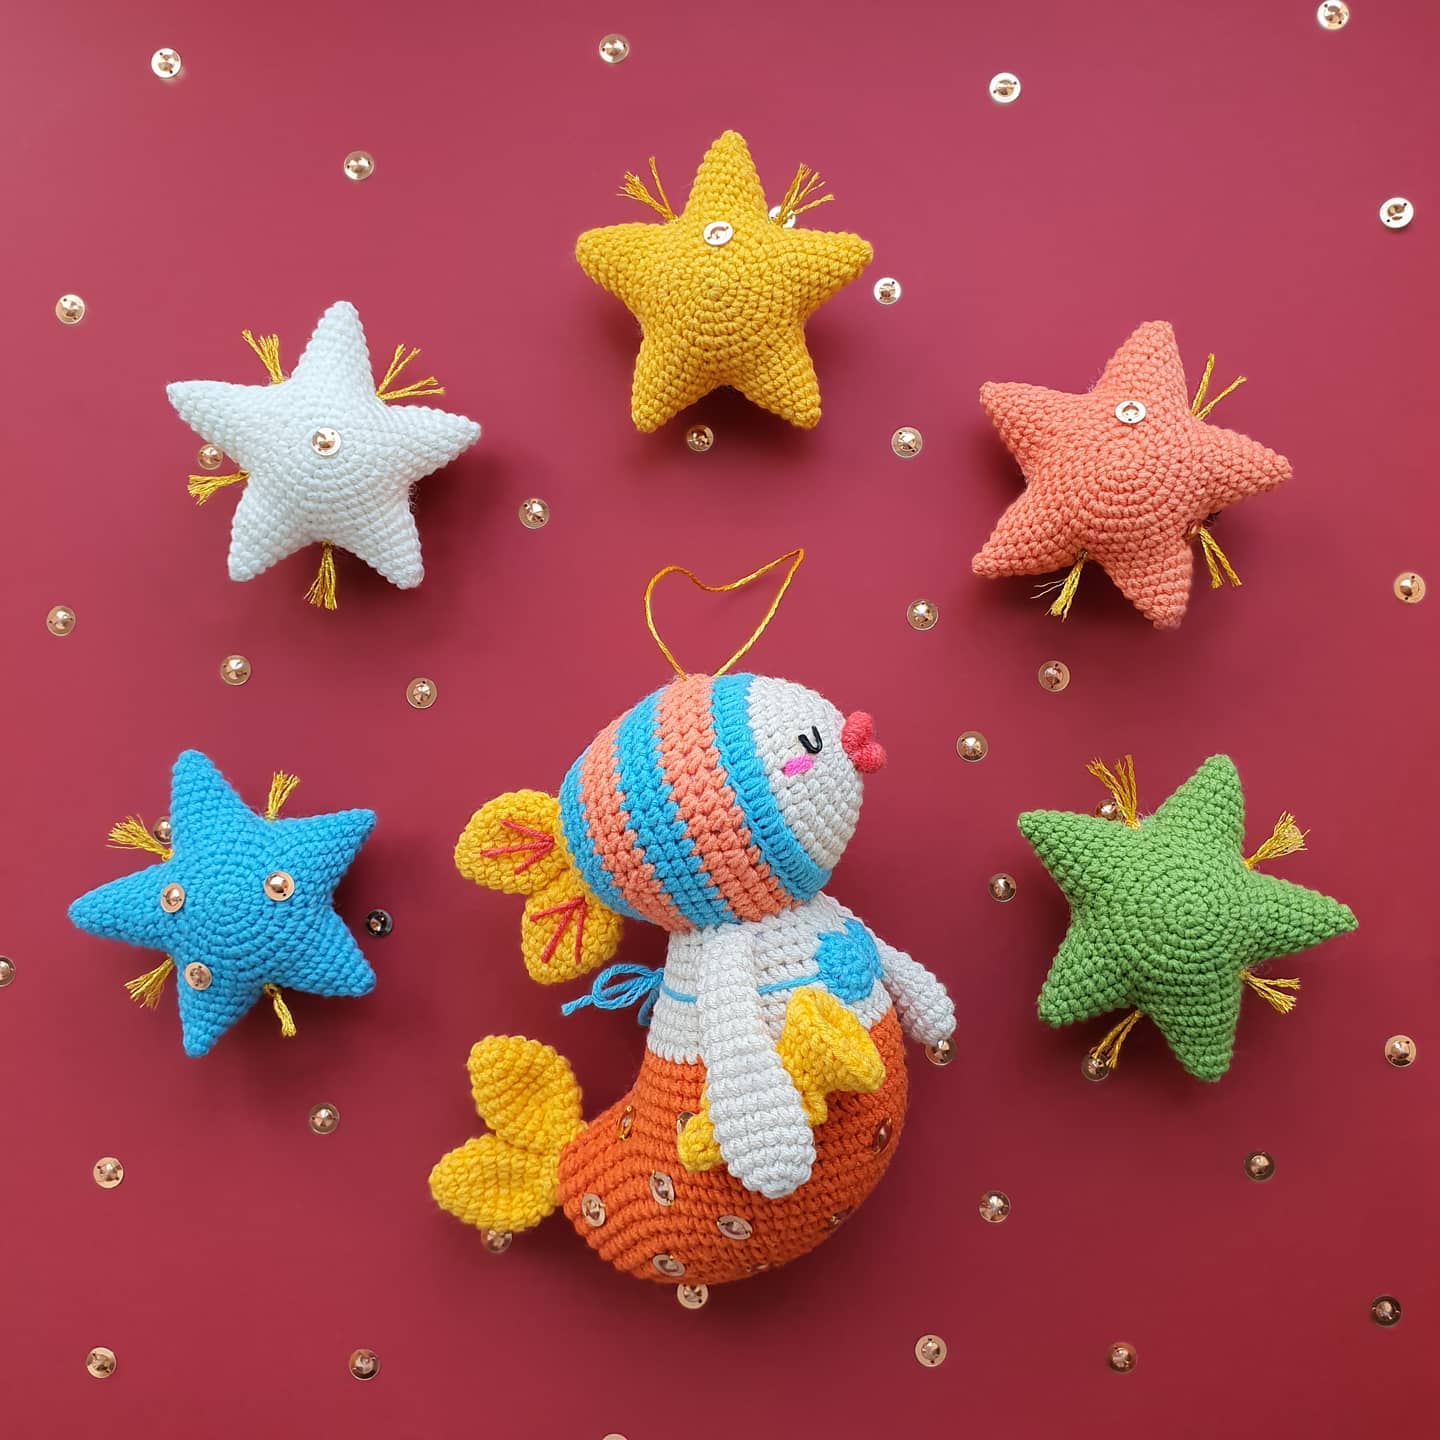 Star Crochet Free Pattern – Amigurumi